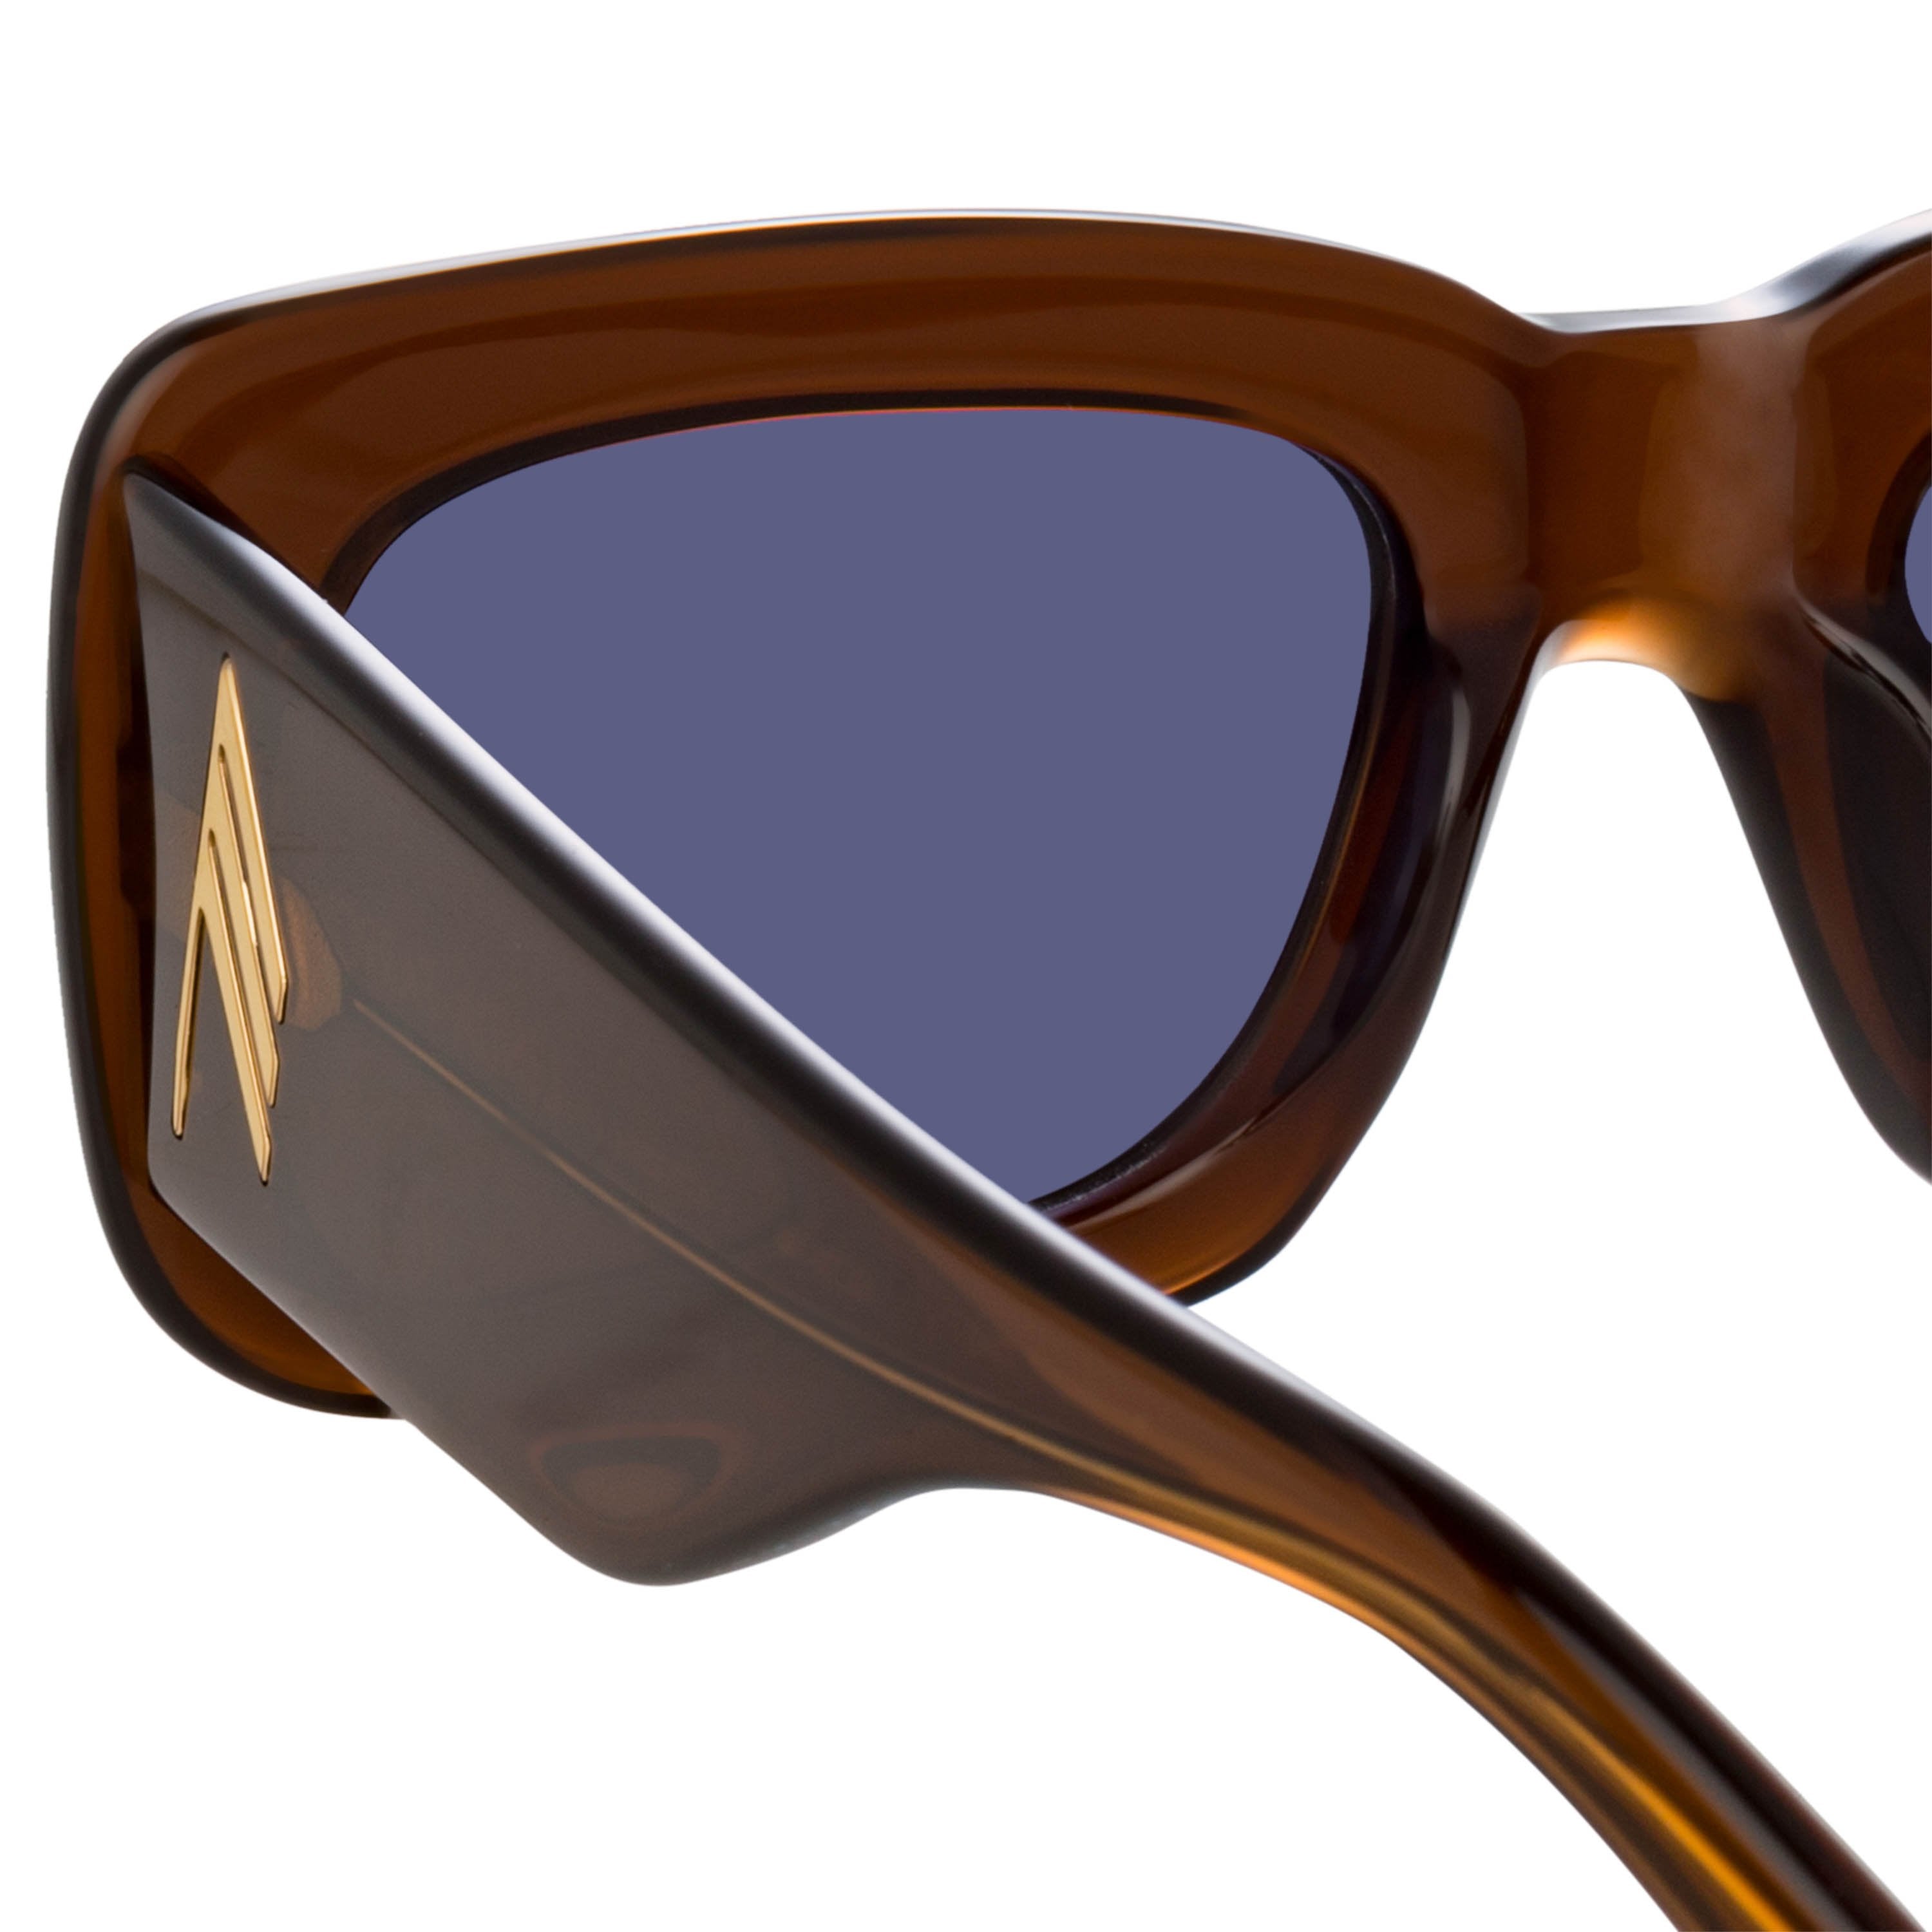 Color_ATTICO3C14SUN - Attico Marfa Rectangular Sunglasses in Brown